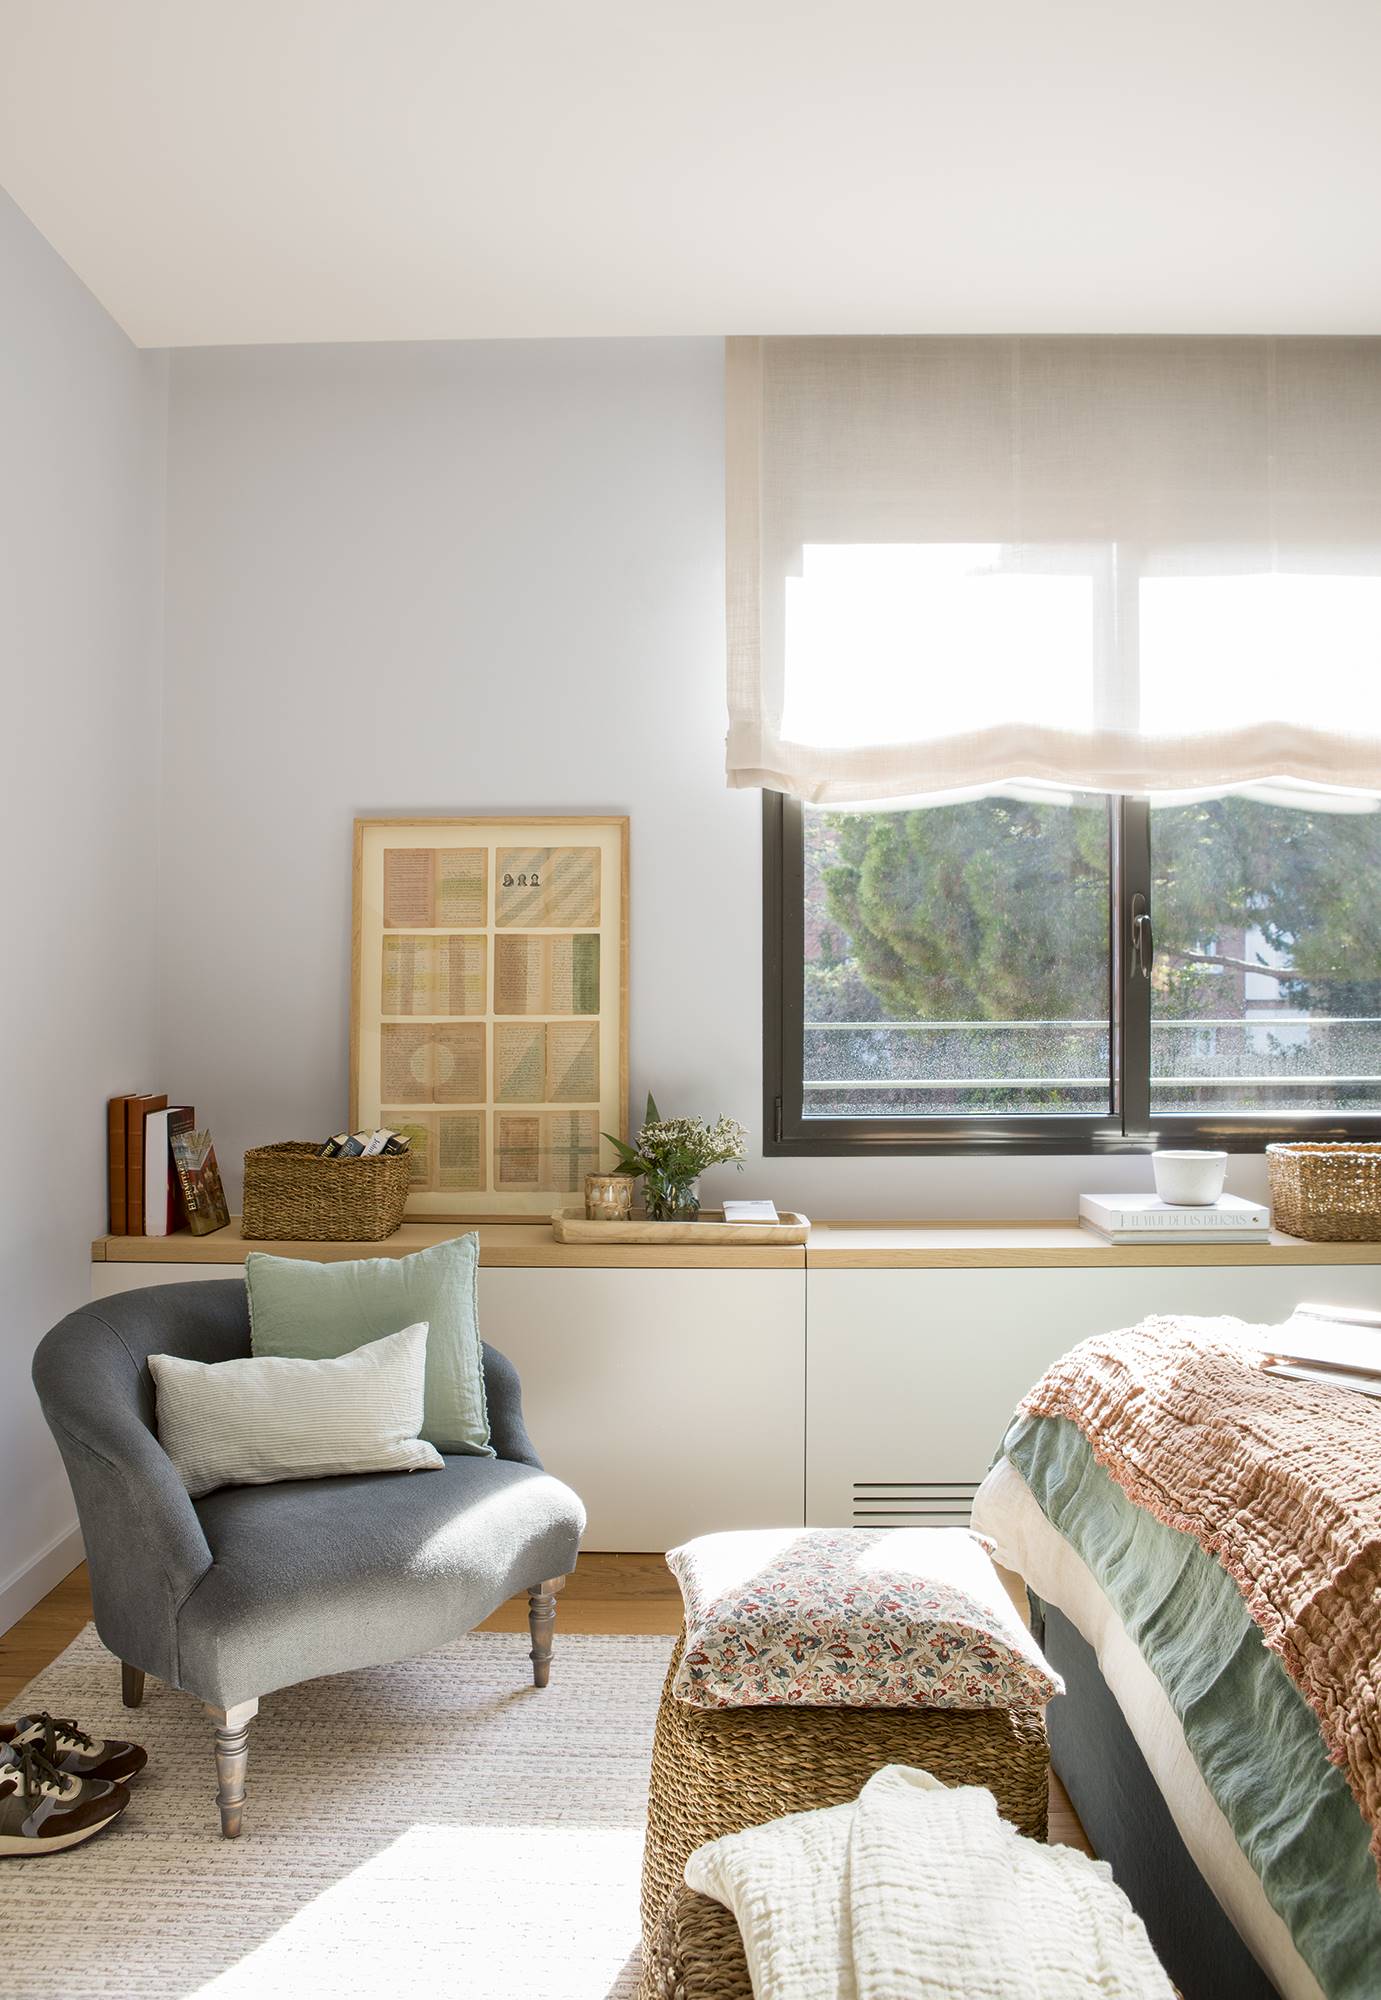 Dormitorio con mueble blanco y de madera a medida bajo la ventana y una butaca para la lectura.